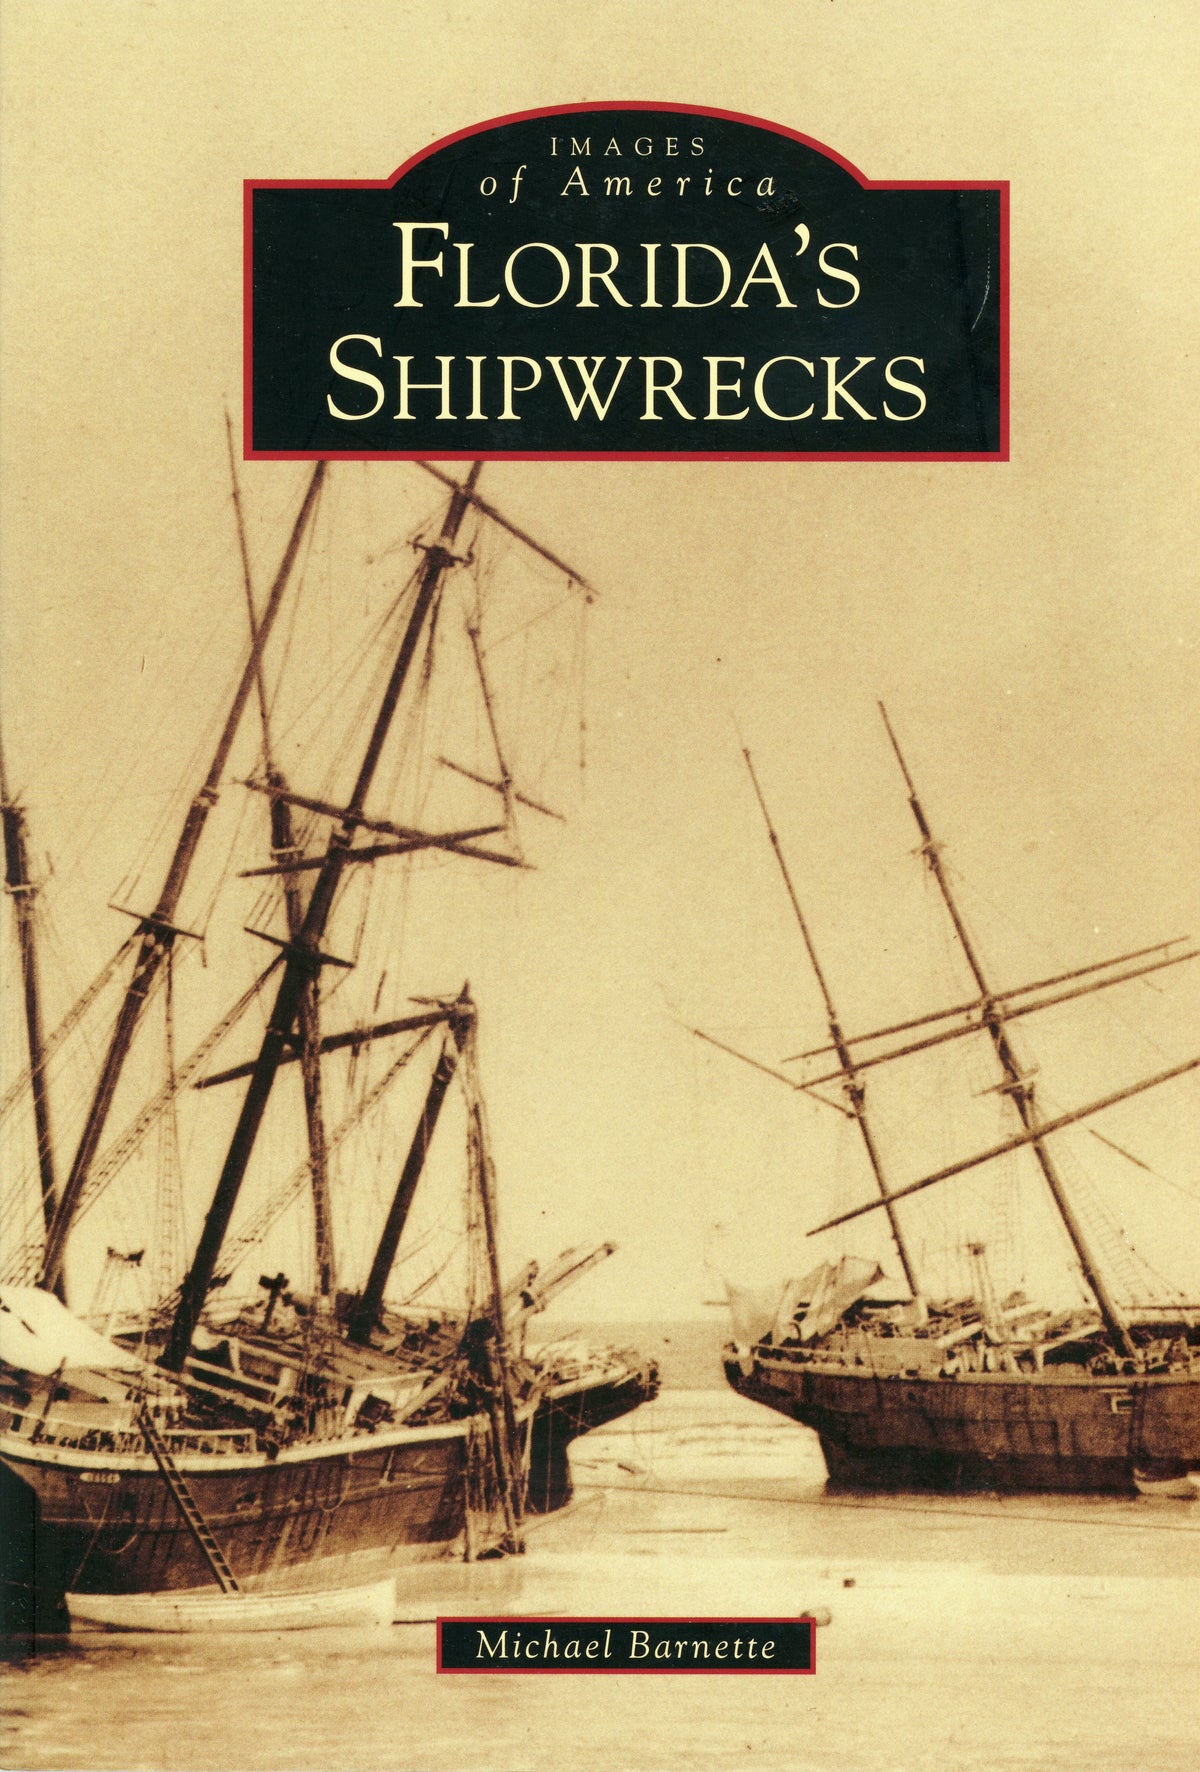 Images of America: Florida's Shipwrecks